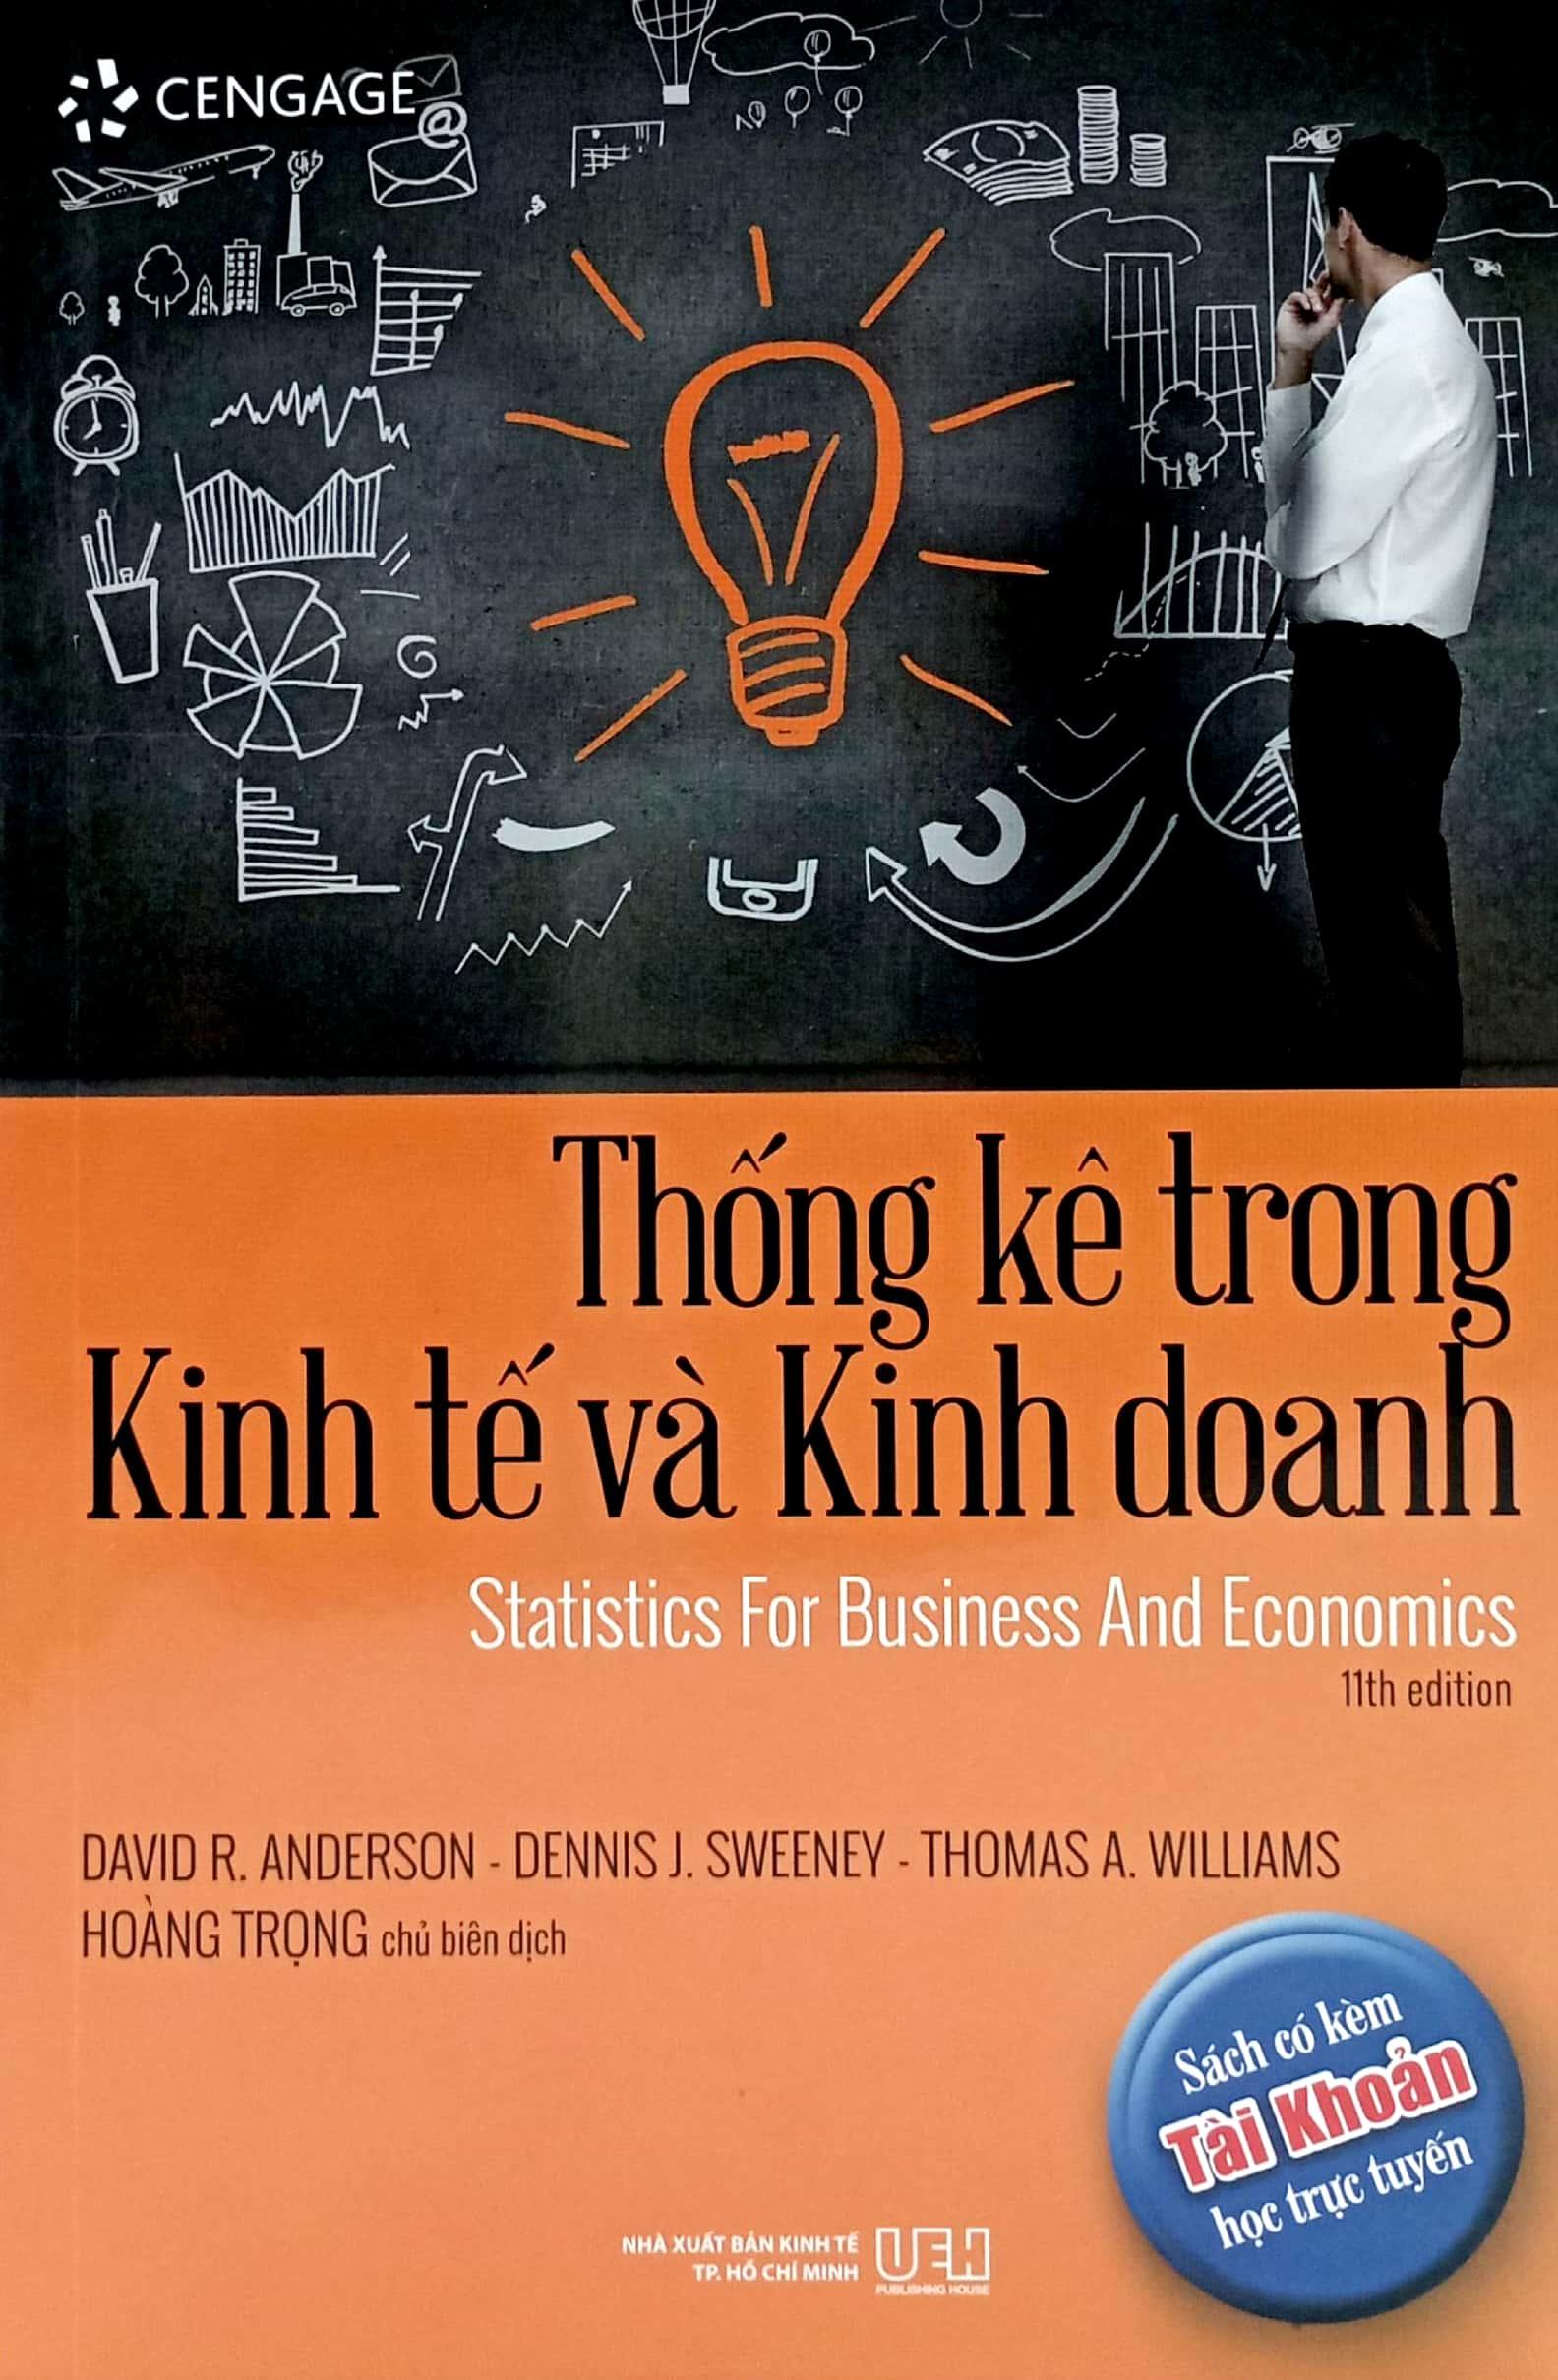 Thống Kê Trong Kinh Tế Và Kinh Doanh - Statistics For Business And Economics